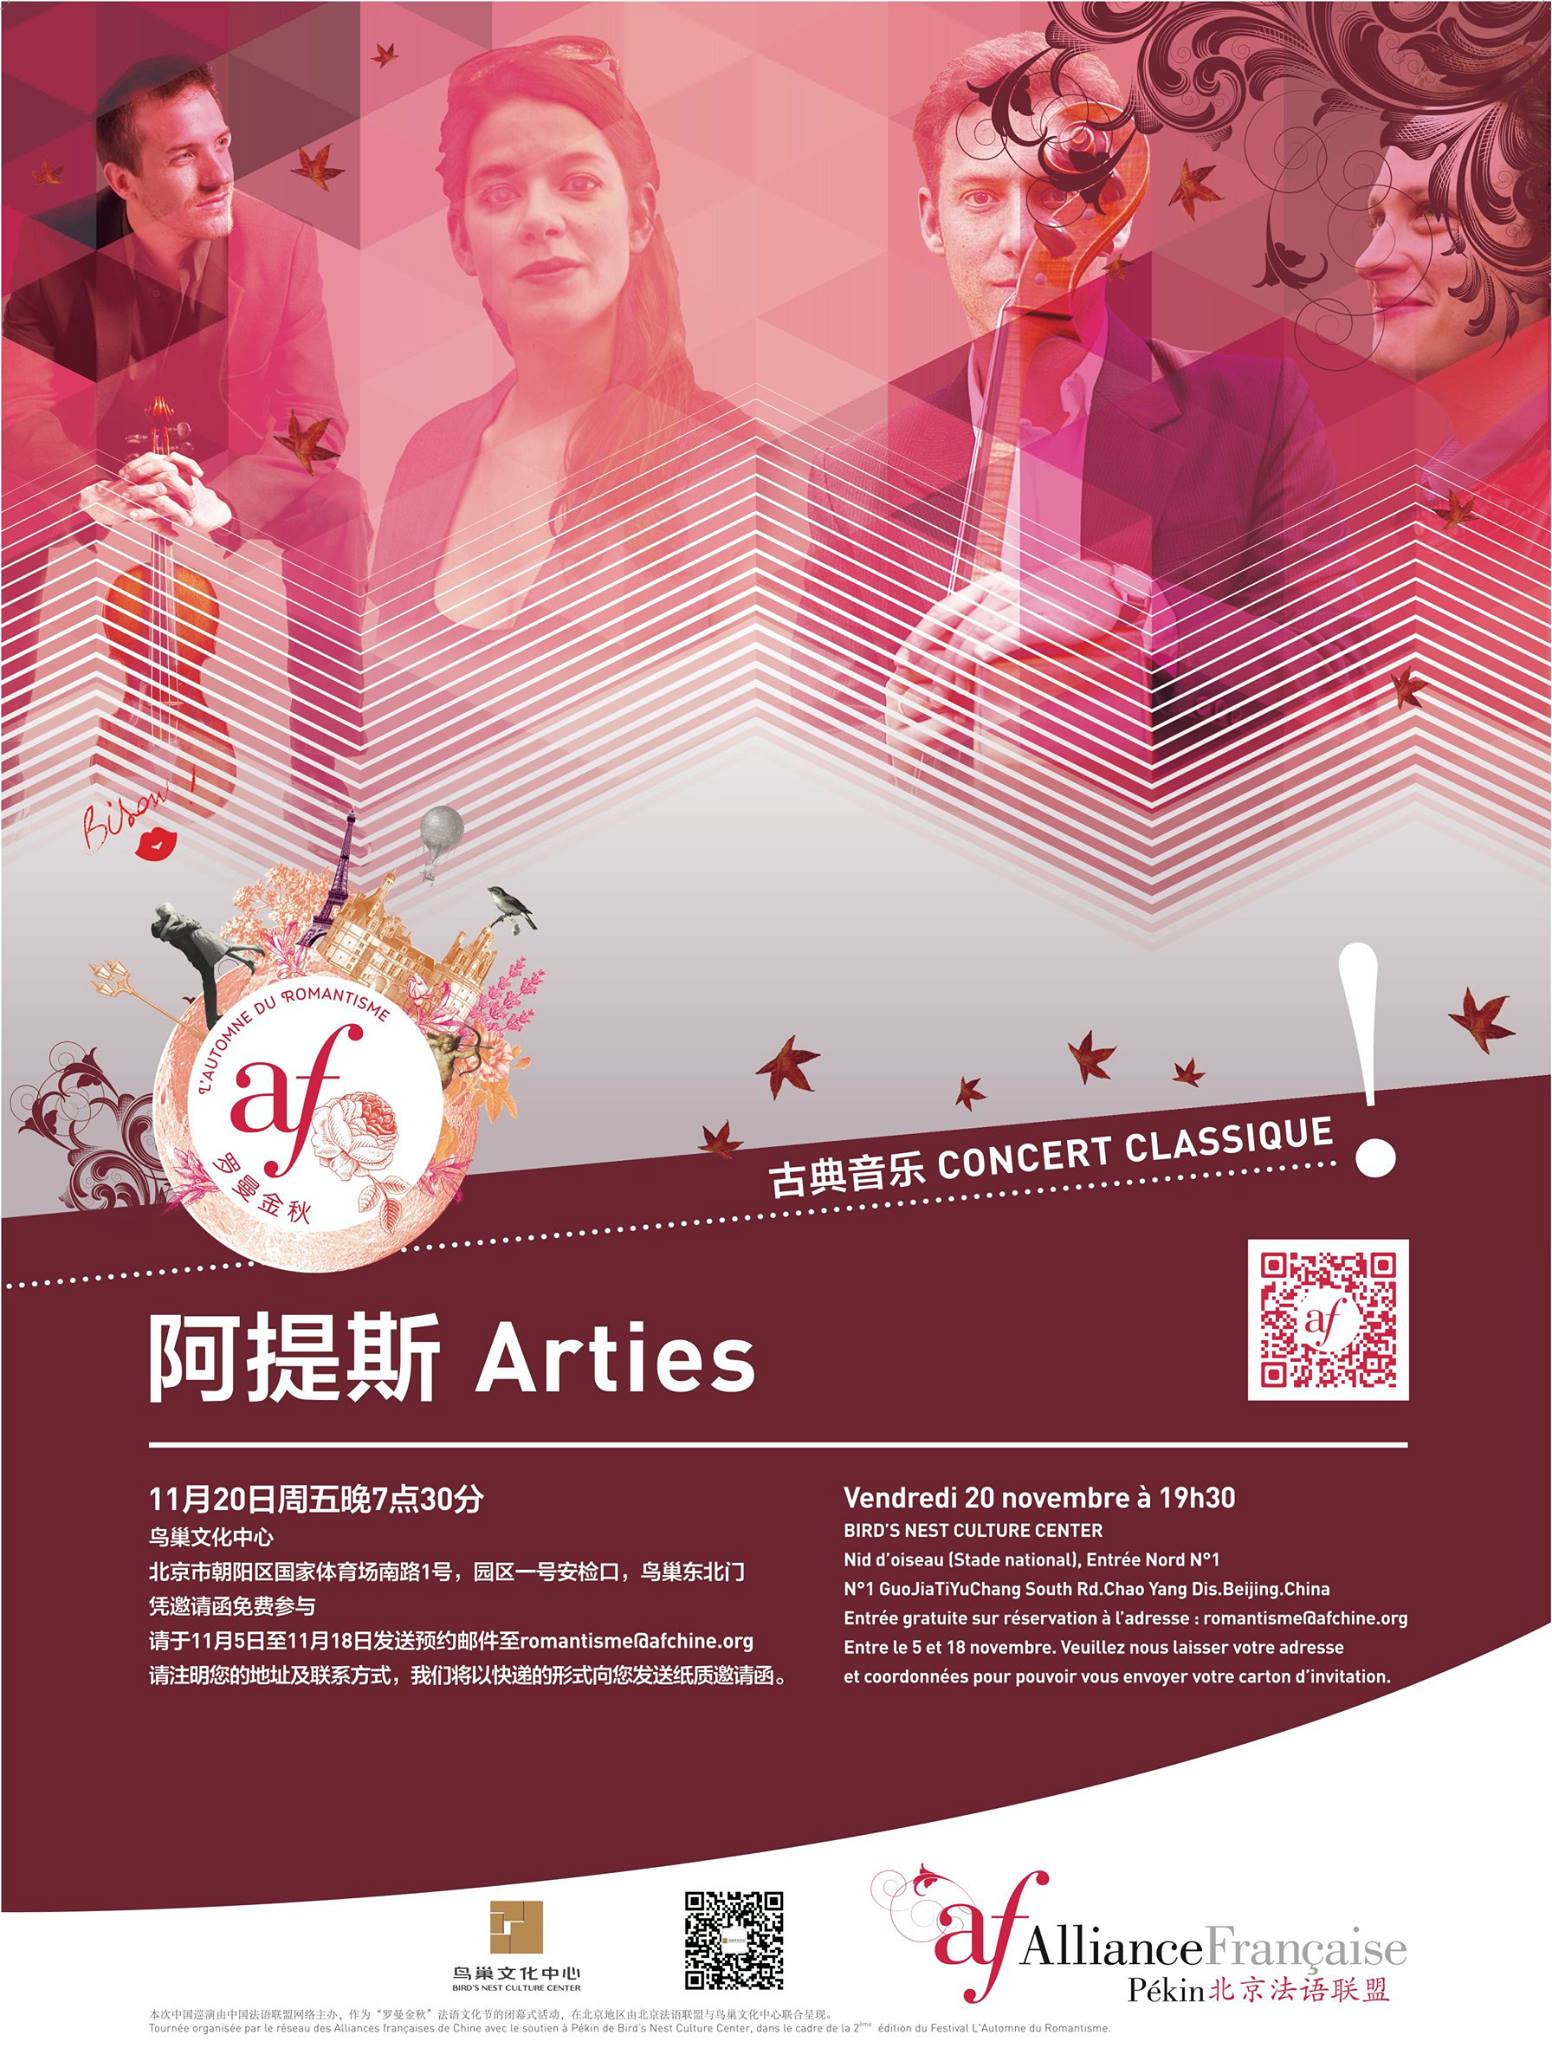 Le Arties festival est en Chine pour 6 concerts exceptionnels à Pékin, Tianjin, Nankin, Hangzhou et Macao.